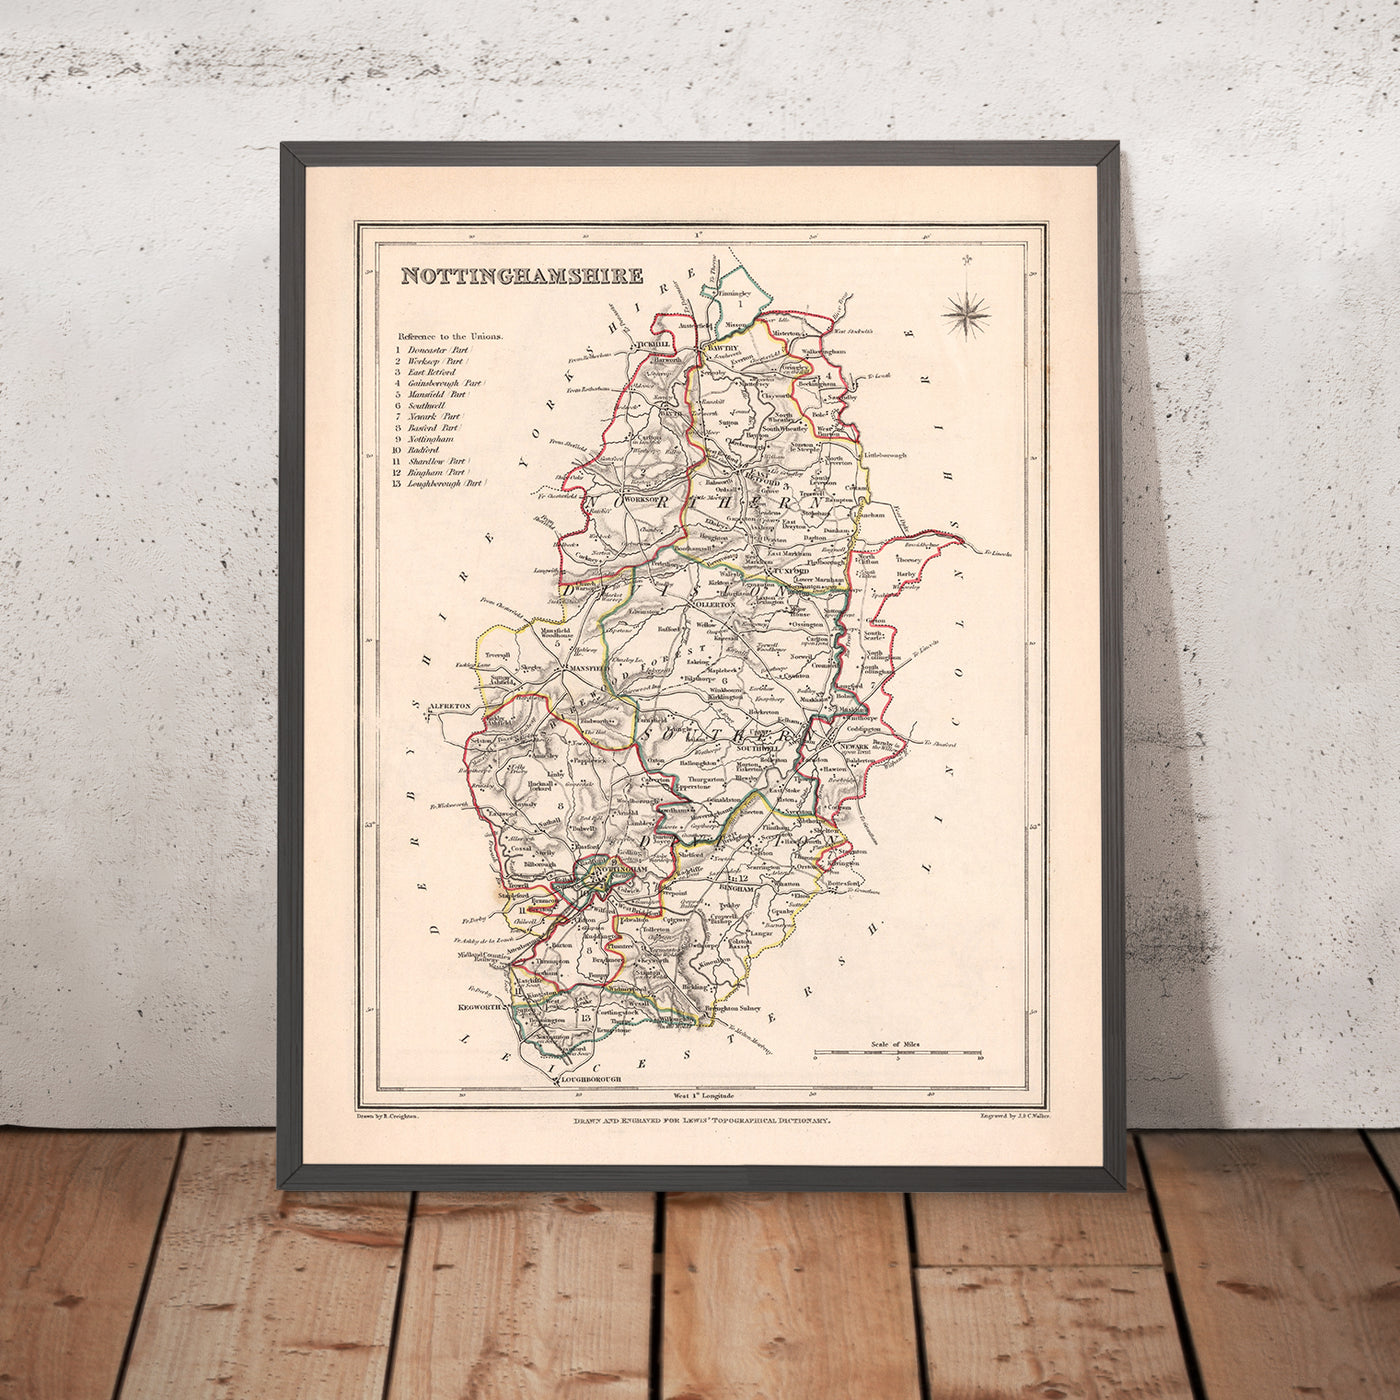 Alte Karte von Nottinghamshire von Samuel Lewis, 1844: Nottingham, Mansfield, Worksop, Newark, Retford